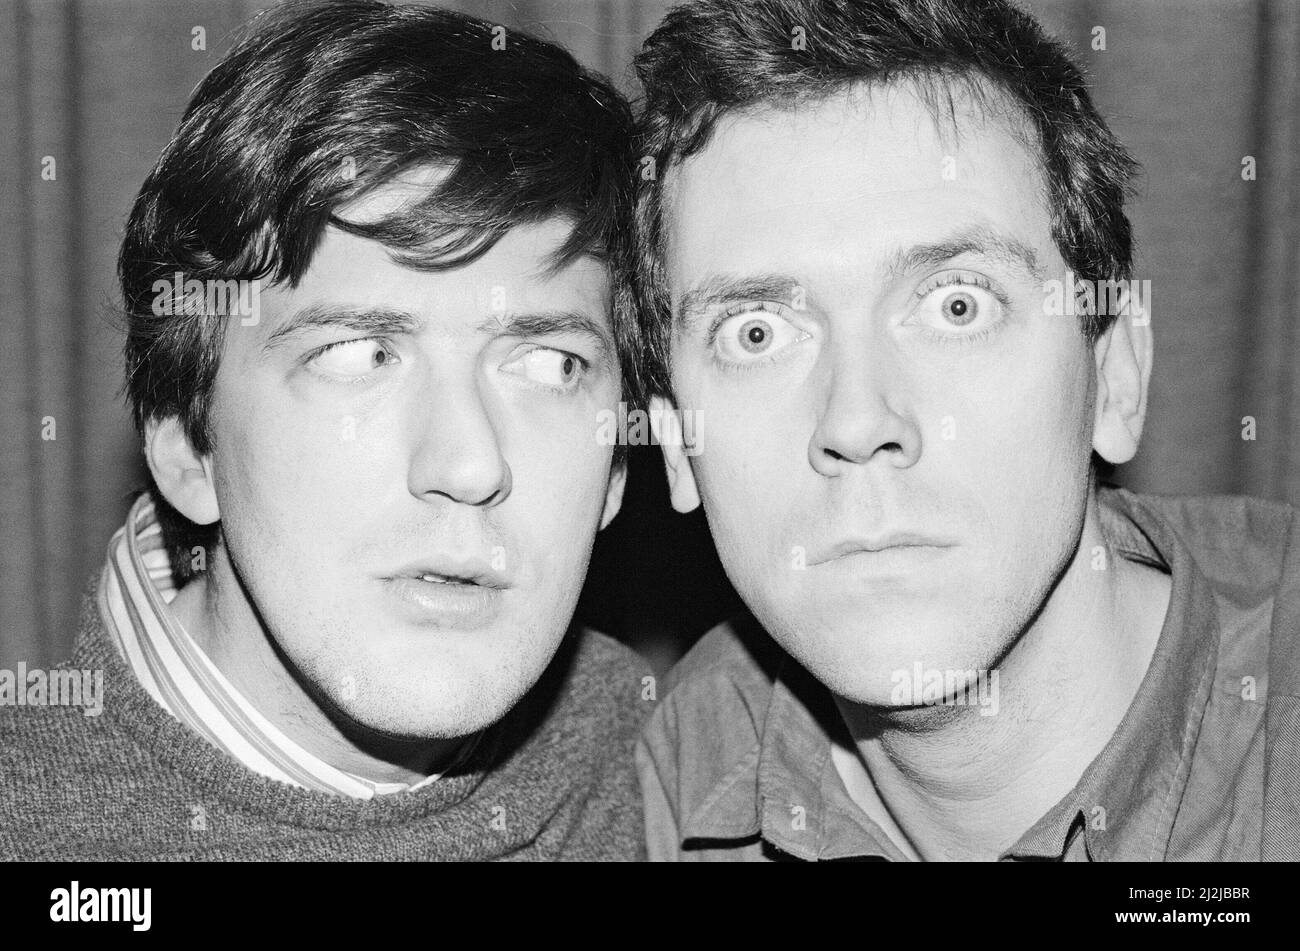 Das Bild zeigt Stephen Fry (links) und die riesige Laurie (rechts). Fry und Laurie sind ein erfolgreicher englischer Comedy-Doppelakt, der hauptsächlich in den Jahren 1980s und 1990s aktiv war. Foto aufgenommen - 29.. Januar 1987 Stockfoto